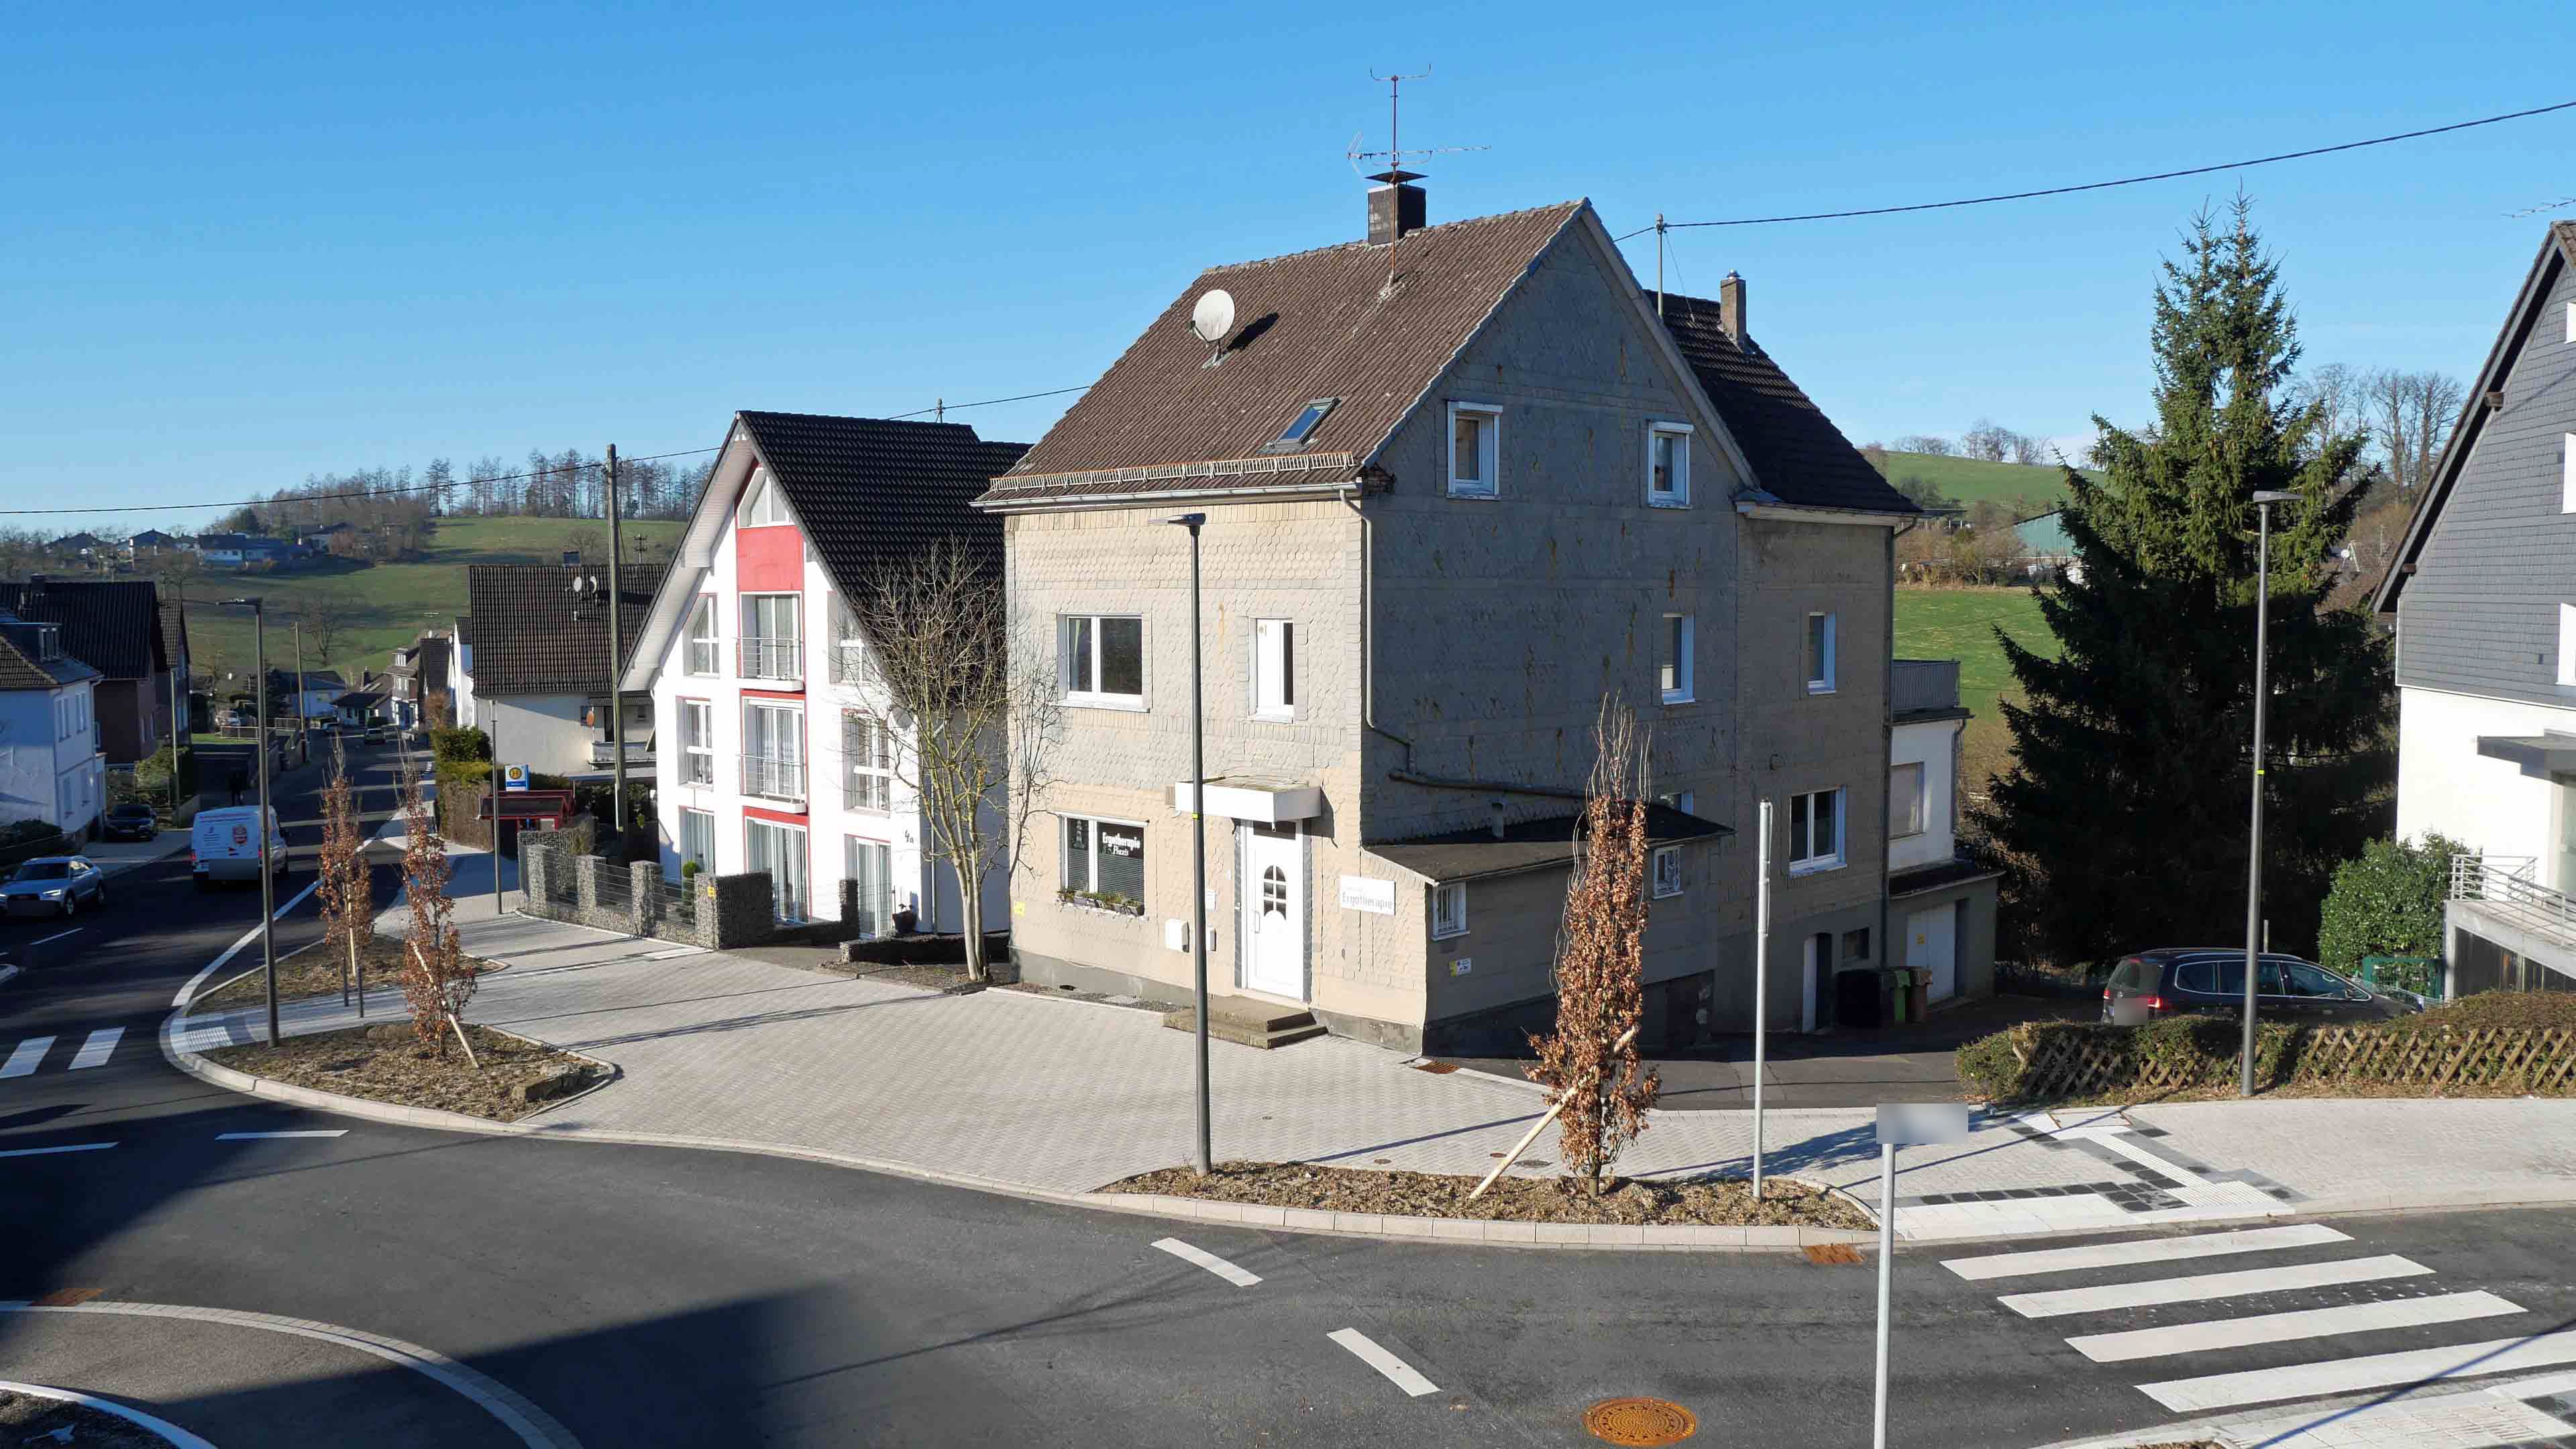 Gummersbach: Präsent am Stadtkern gelegen, die Bushaltestelle zum Zentrum ist in direkter Nähe